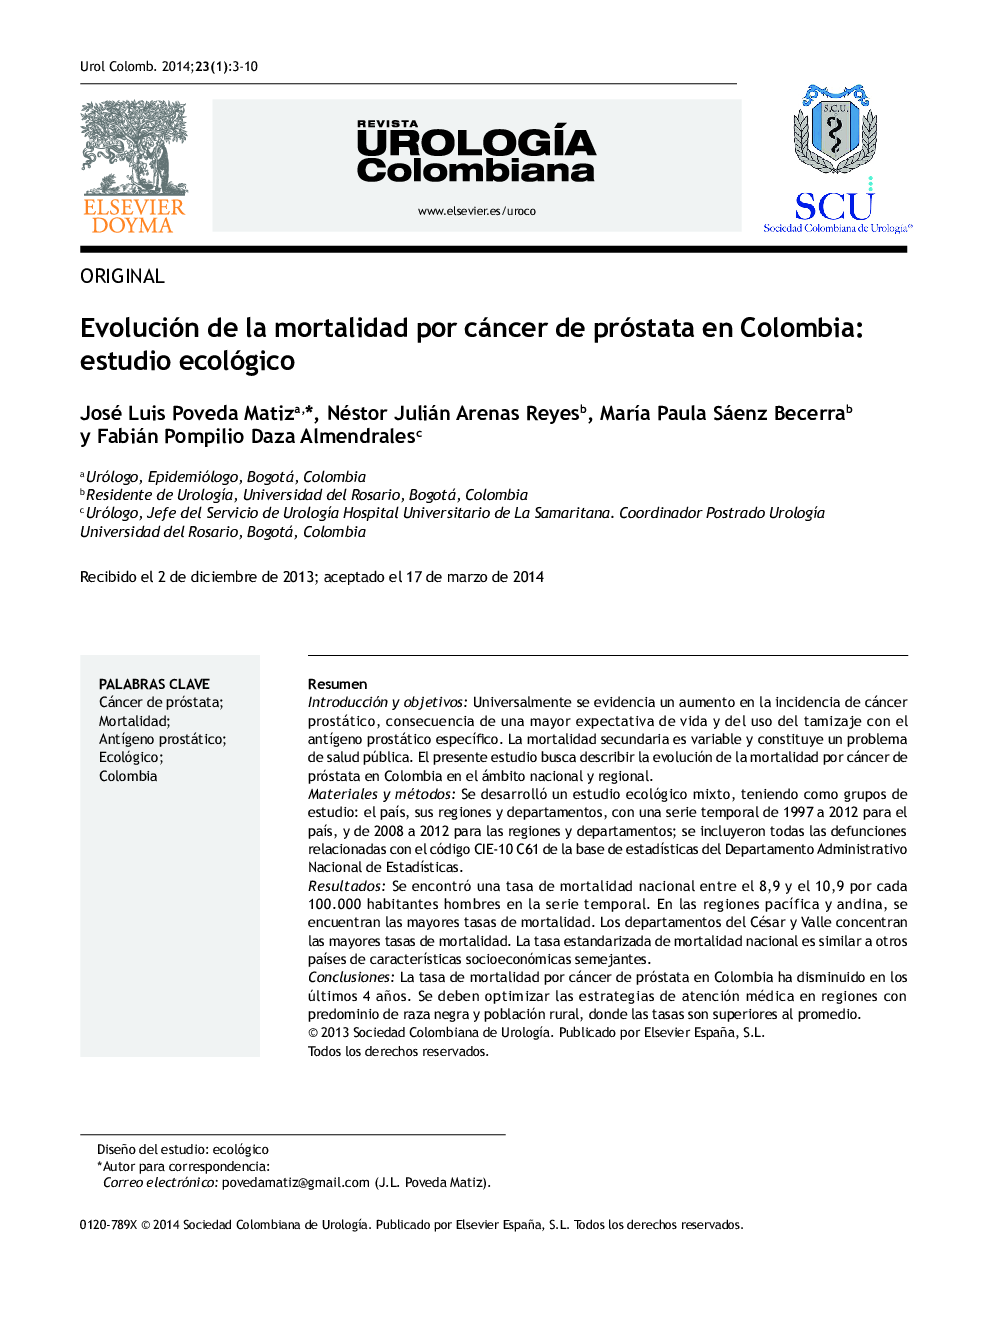 Evolución de la mortalidad por cáncer de próstata en Colombia: estudio ecológico